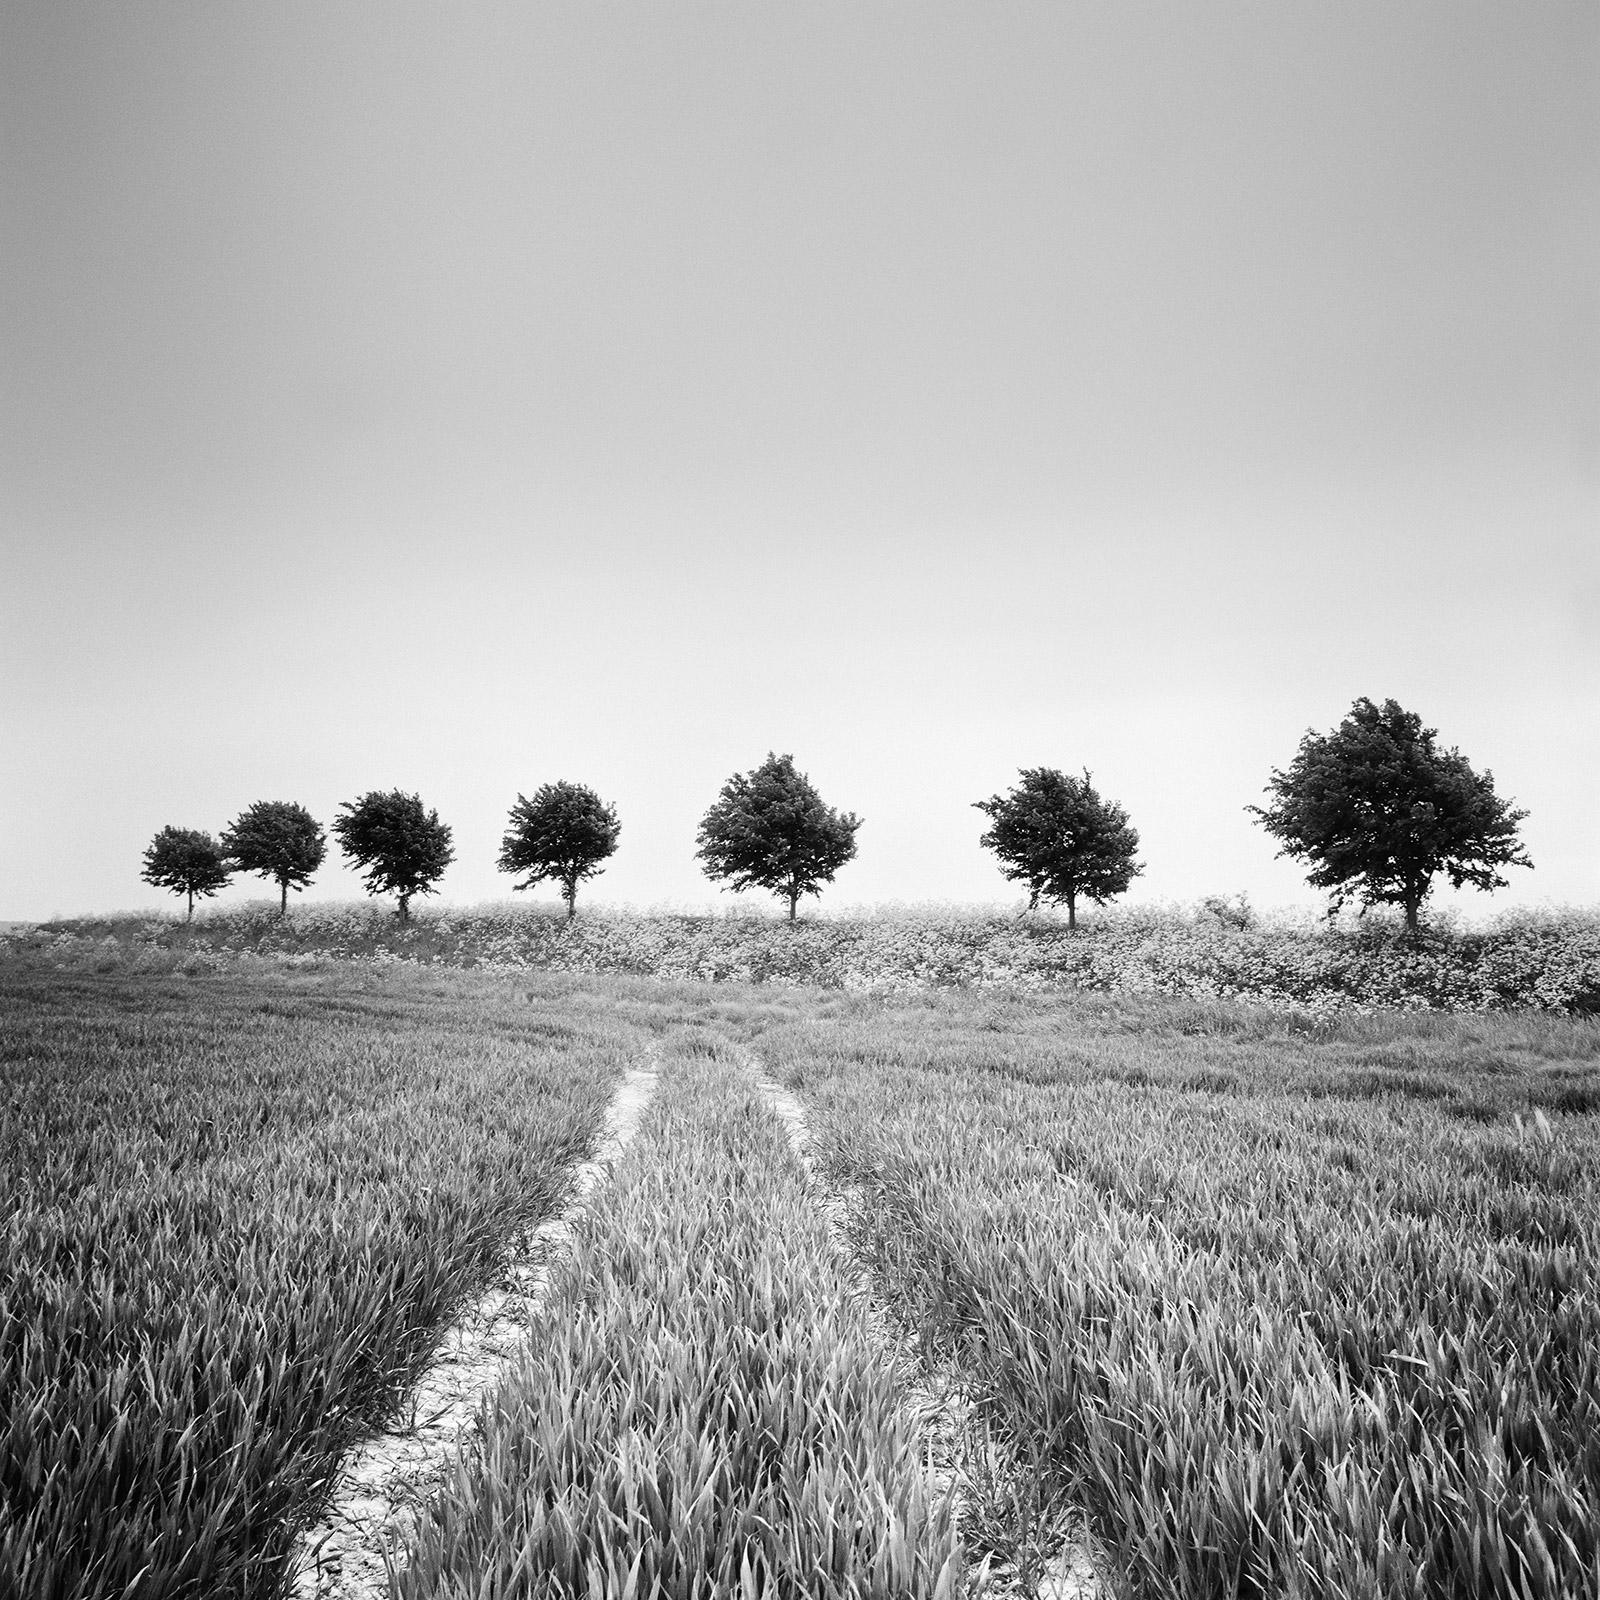 Black and White Photograph Gerald Berghammer - Champ de blé, avenue d'arbres, Pays-Bas, photographie de paysage en noir et blanc